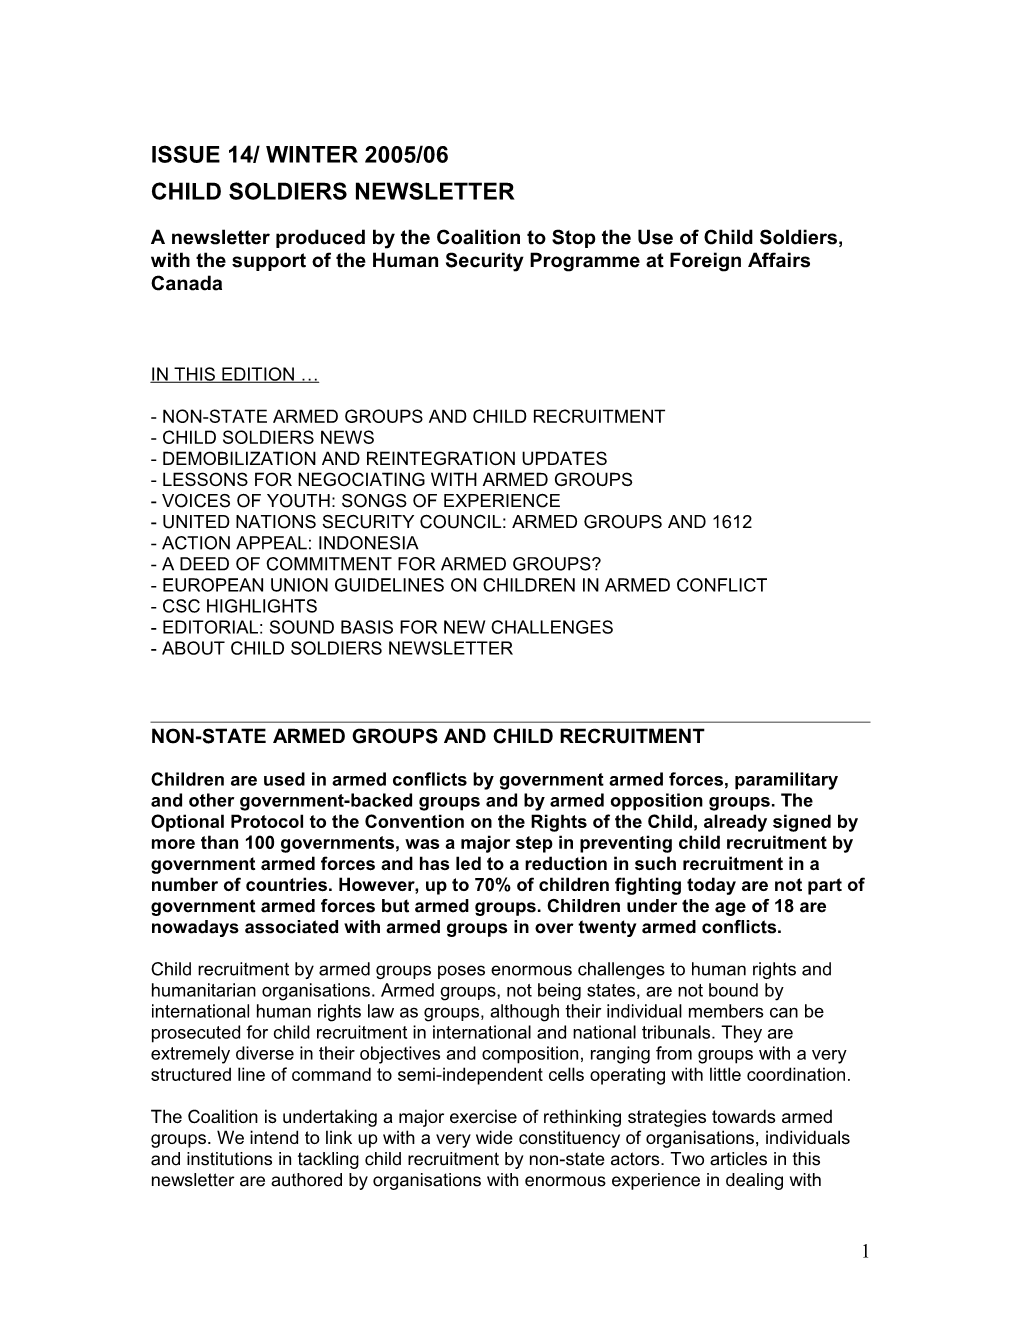 Child Soldier Newsletter Issue 14/ Winter 2005